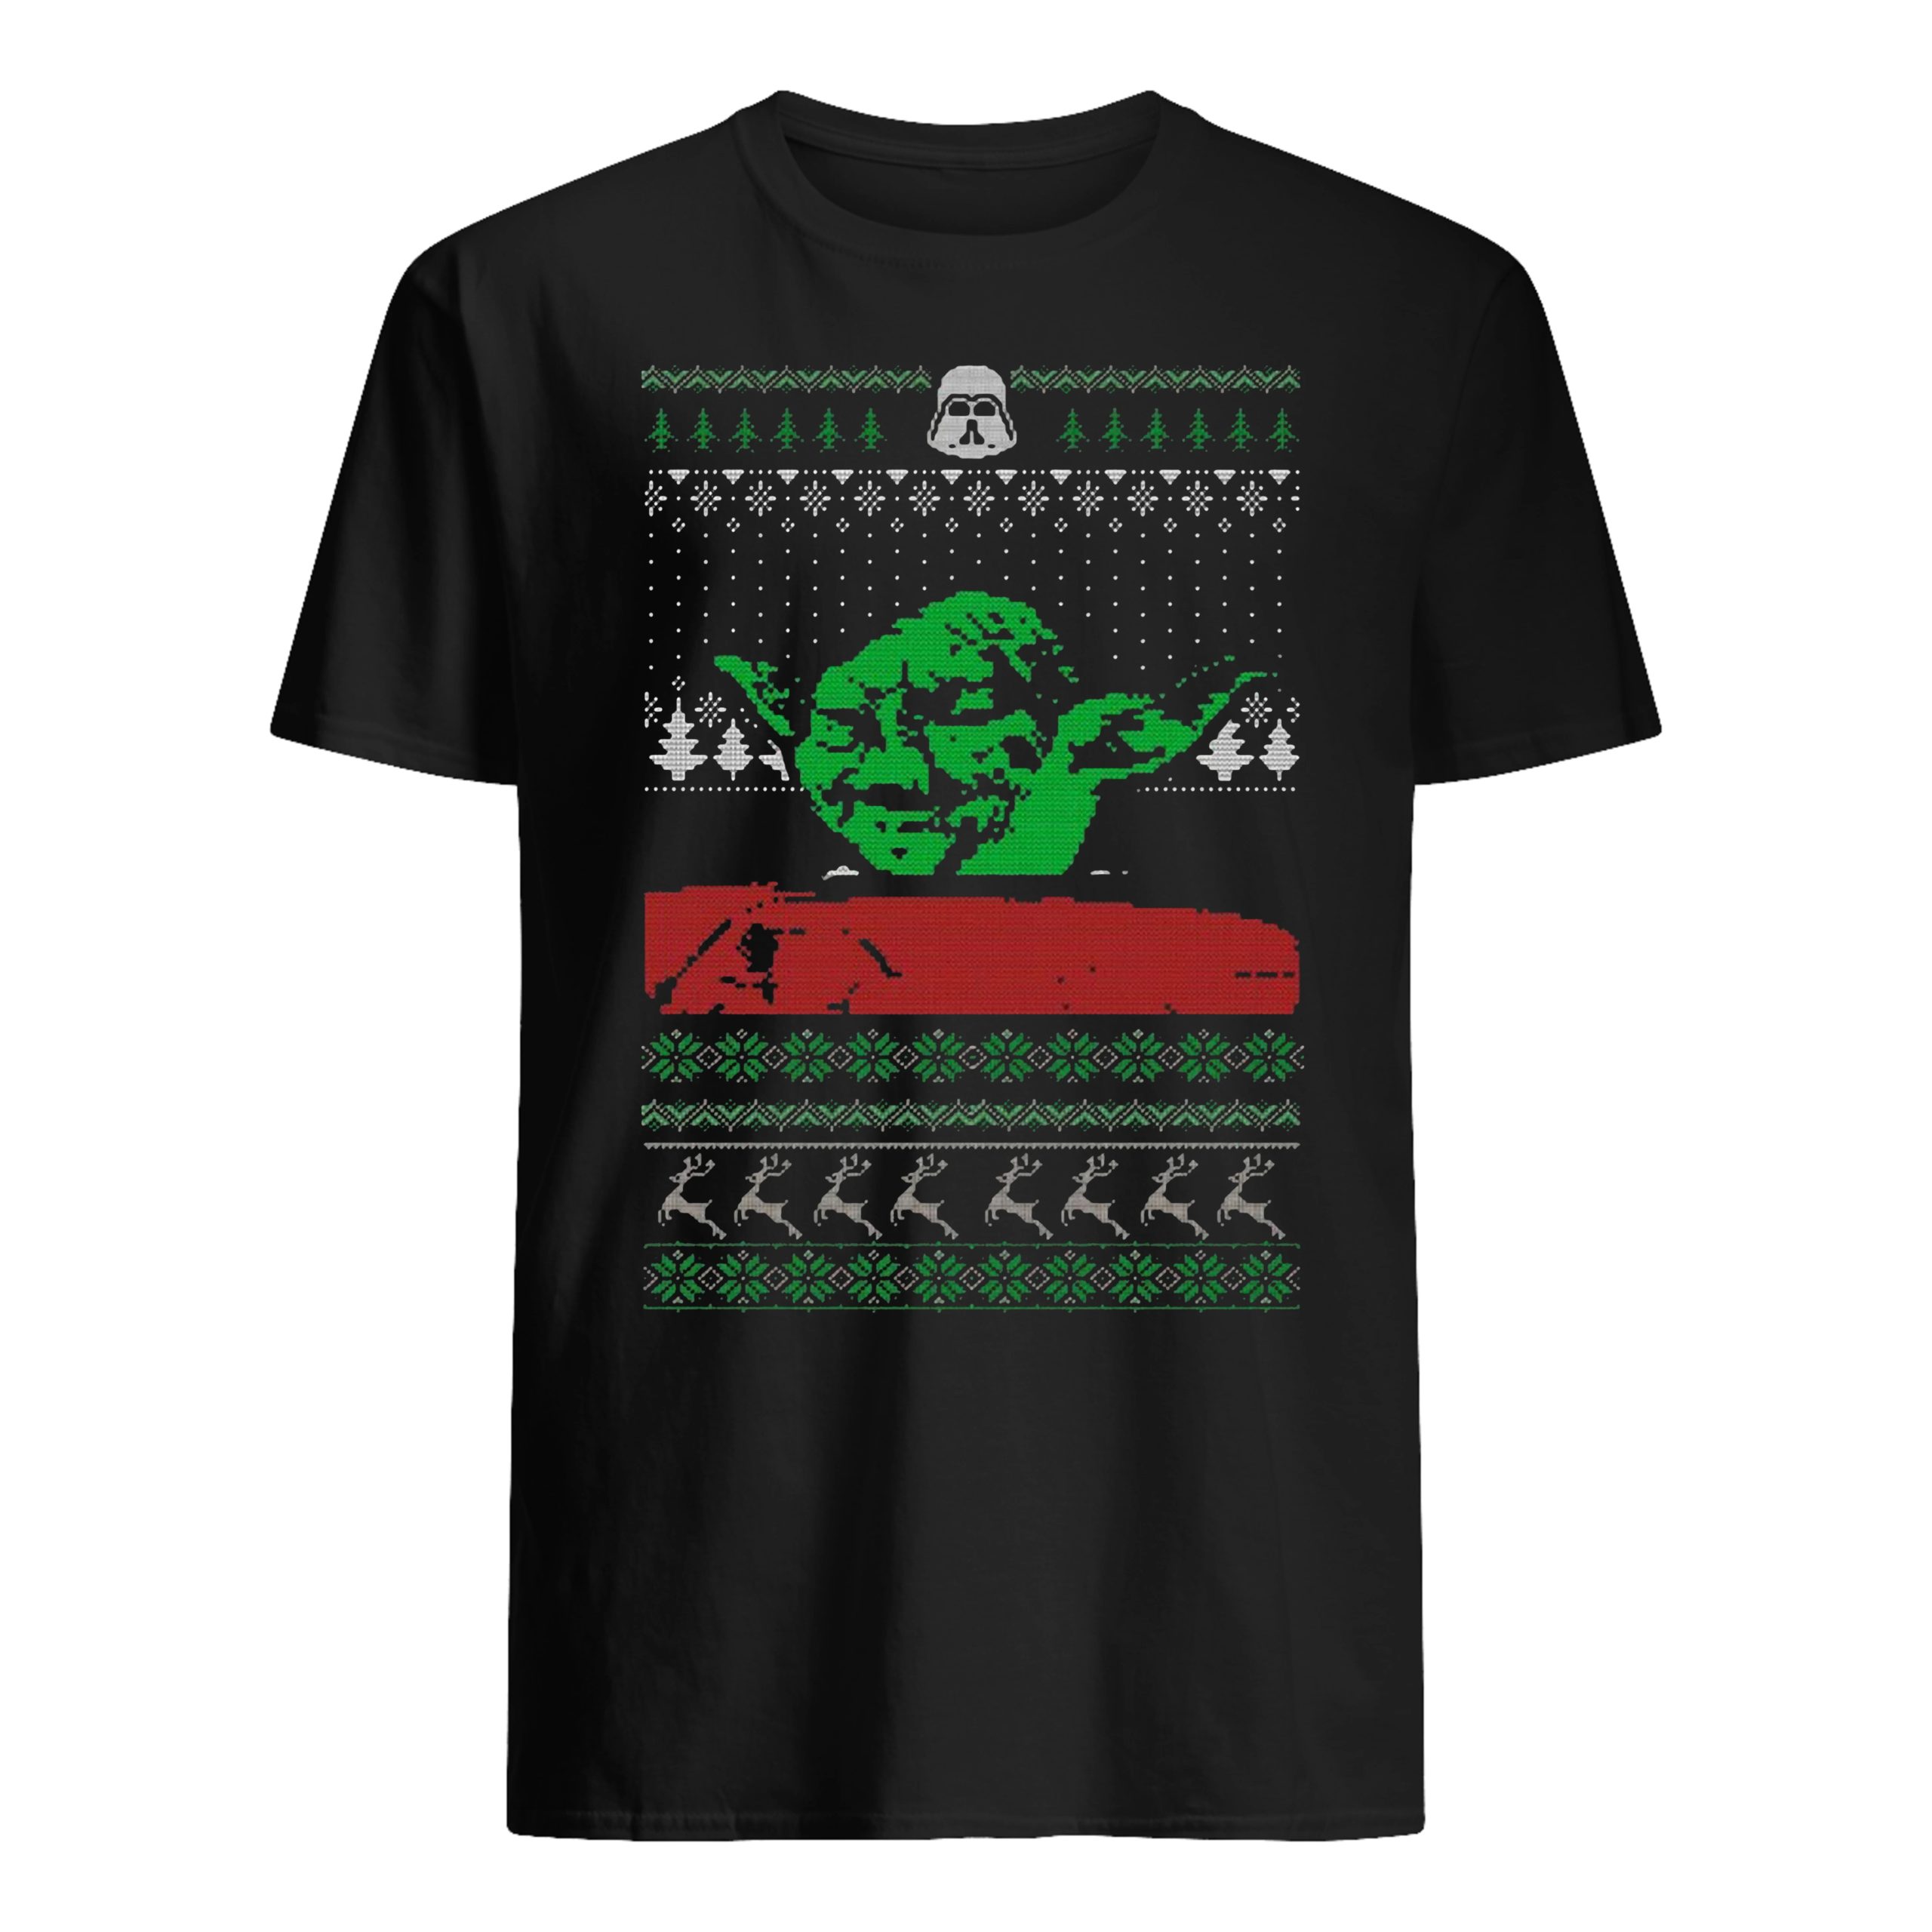 Star Wars Yelling At A Yoda Christmas shirt 2